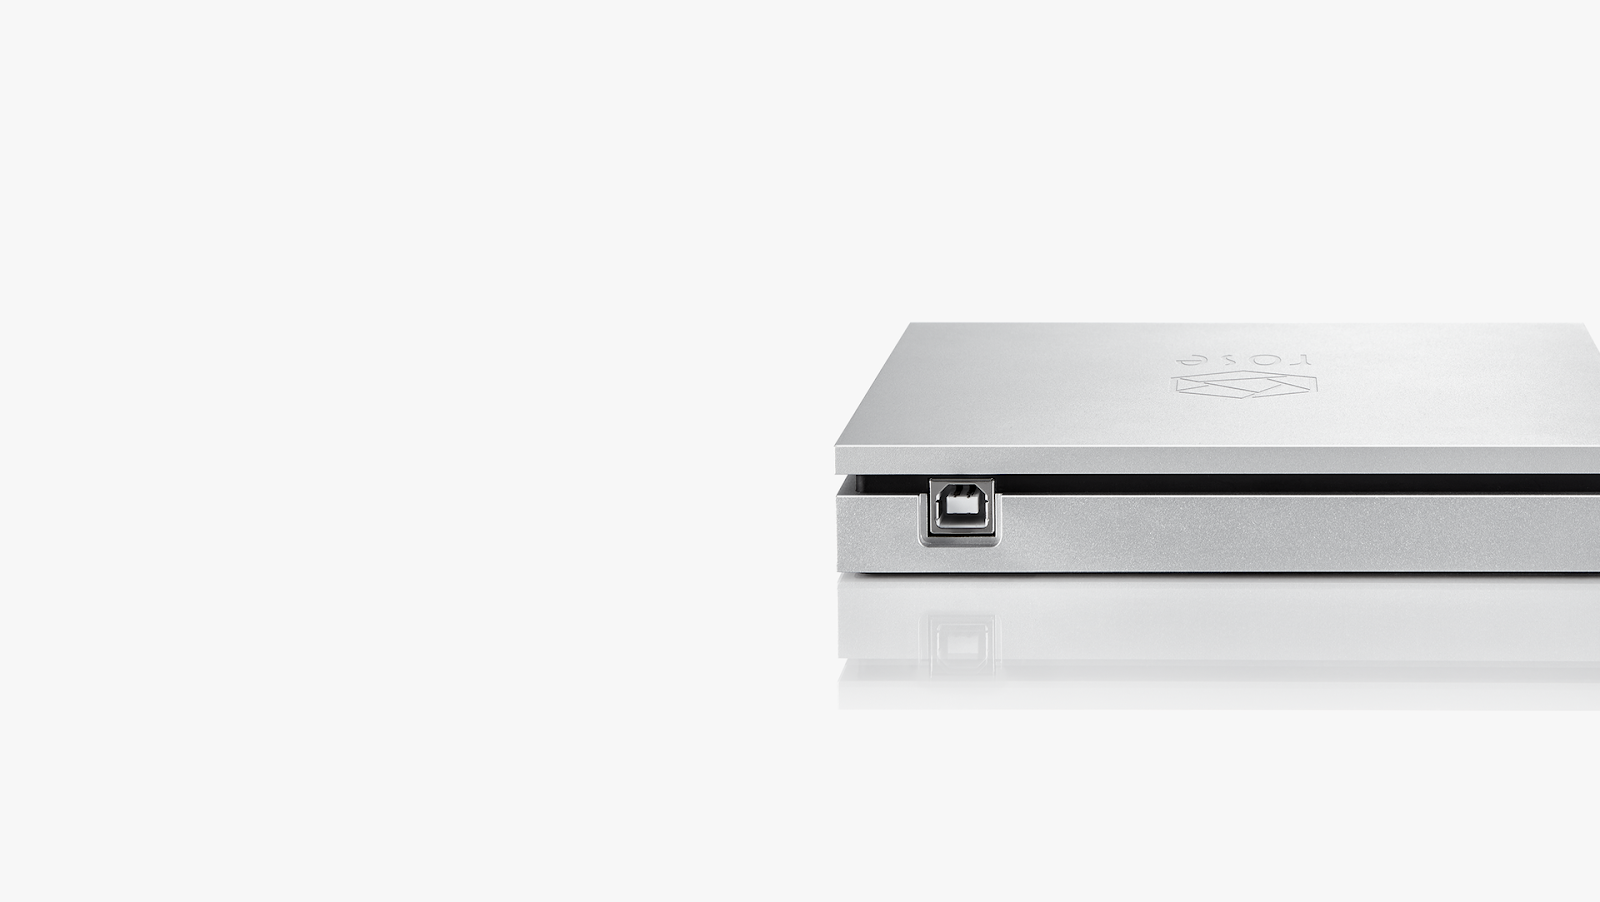 ĐẦU USB CD RIPPER HIFI ROSE RSA780 - HÀNG CHÍNH HÃNG - NEW 100%